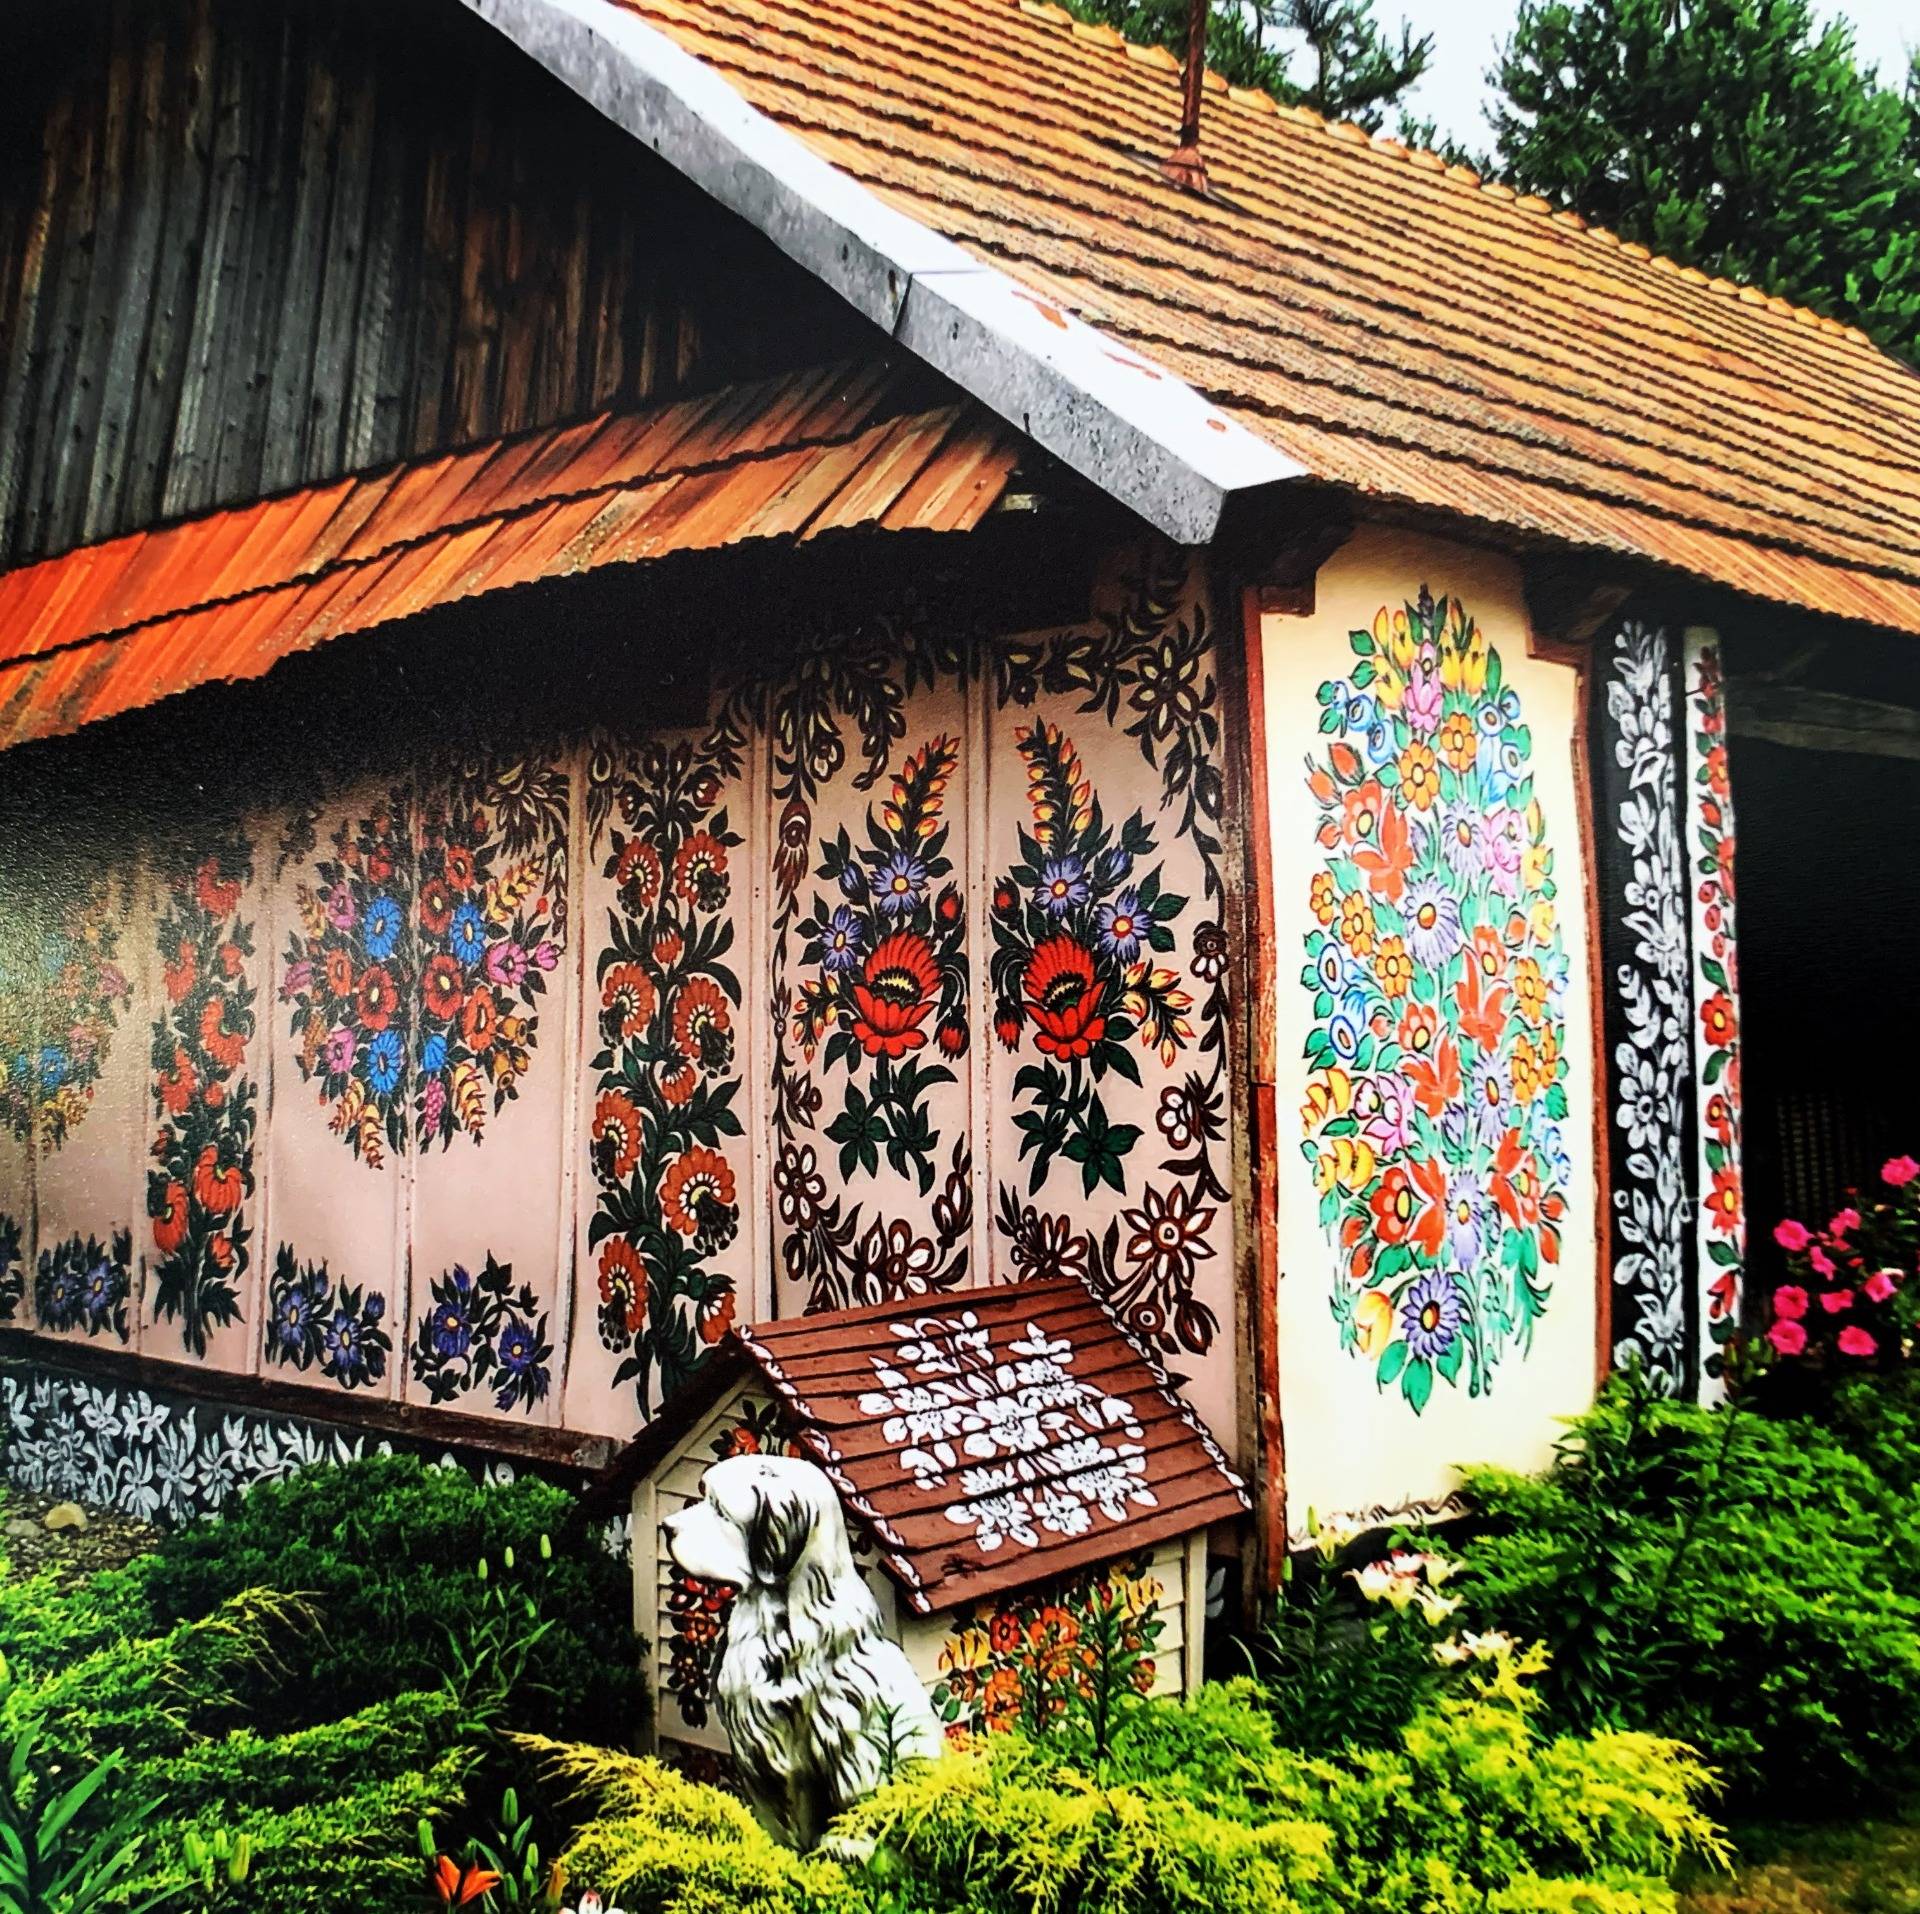 Malowane Chaty w Zalipiu. Po drodze spełnione marzenie Niecieczy.